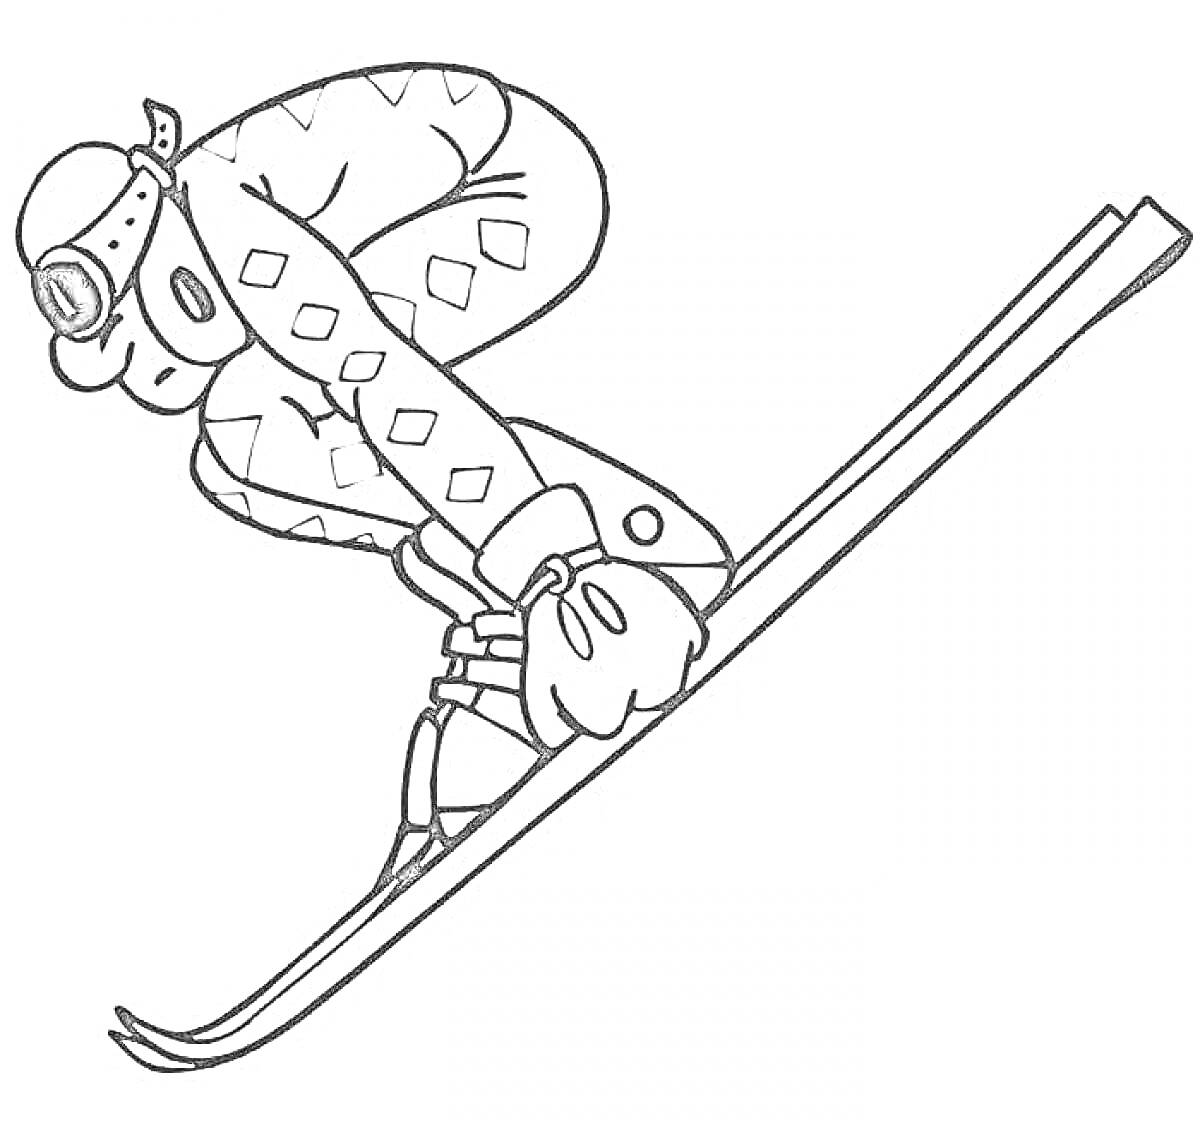 Раскраска Горнолыжный спуск, спортсмен в шлеме и защитных очках на лыжах в динамической позе